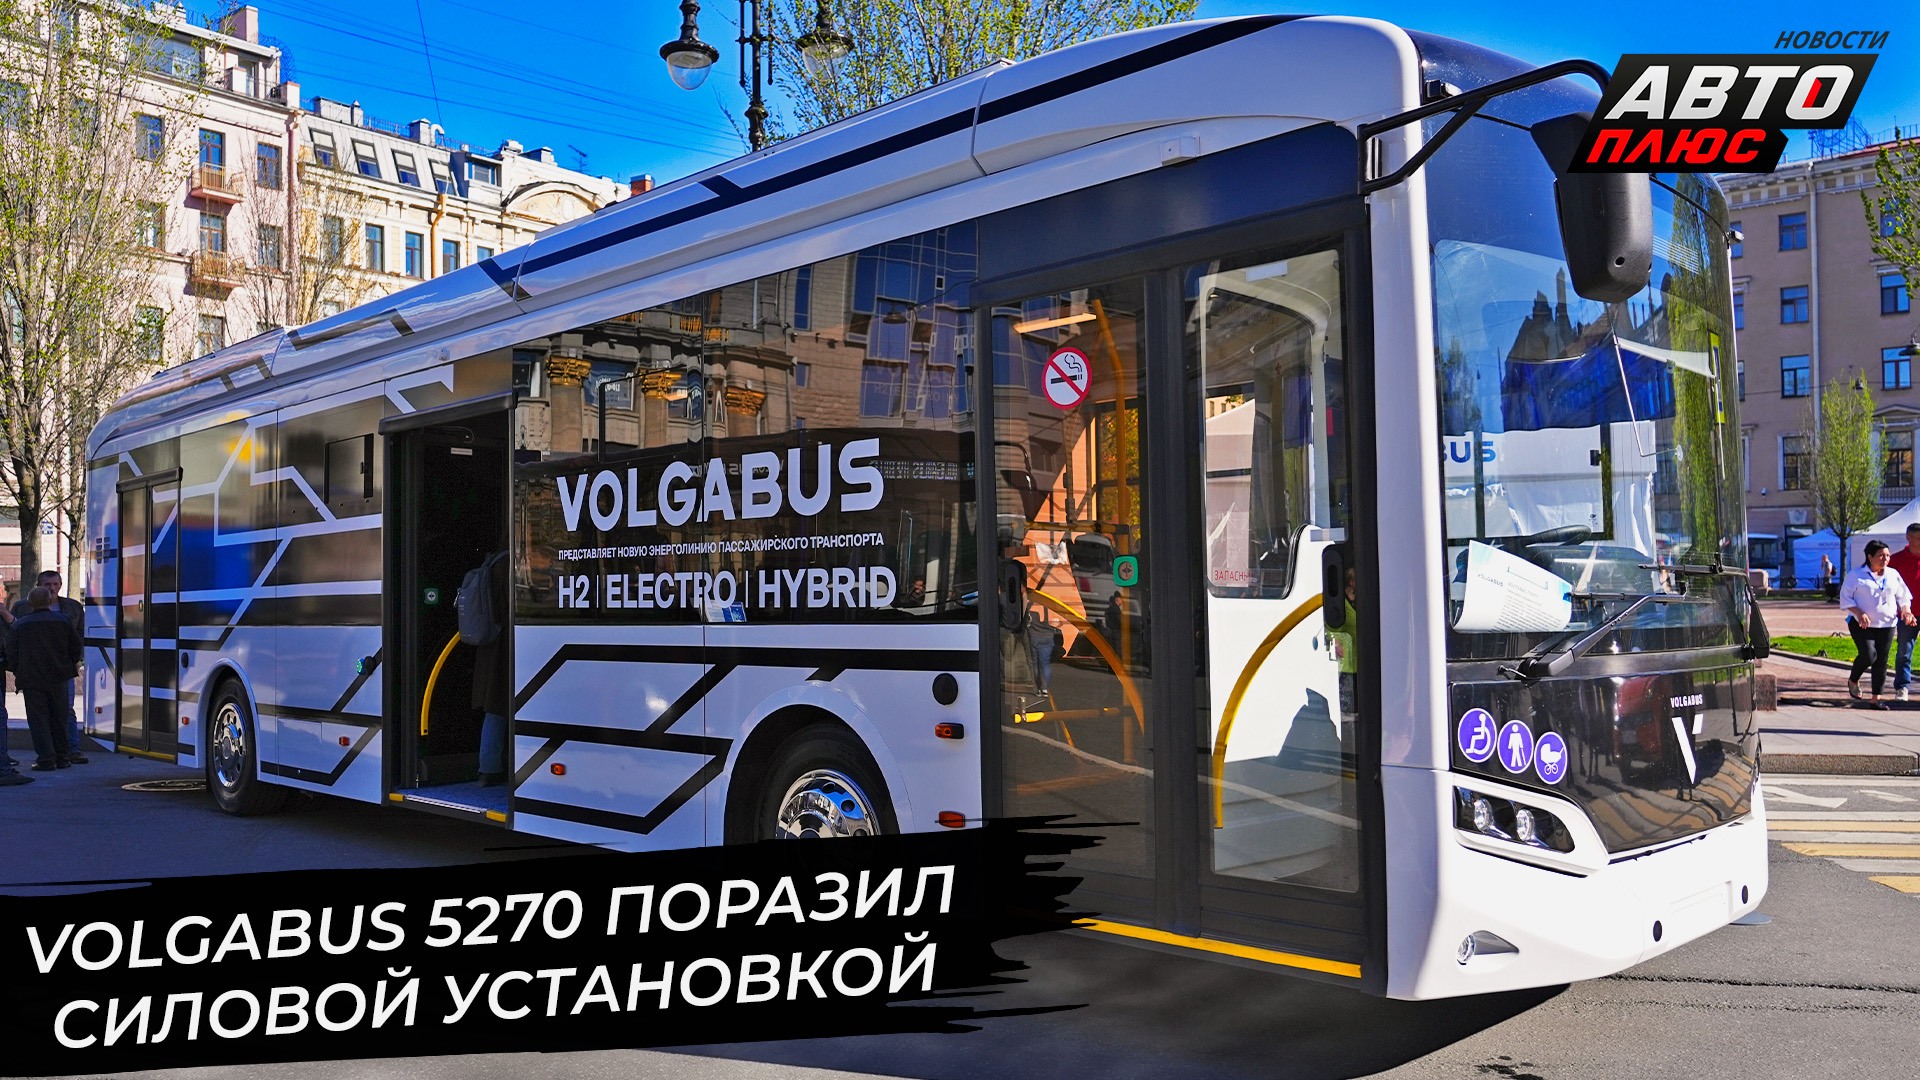 Volgabus 5270 стал гибридом и водоробусом, Volgabus 5285 нацелился на 450 км 📺 Новости с колёс №293